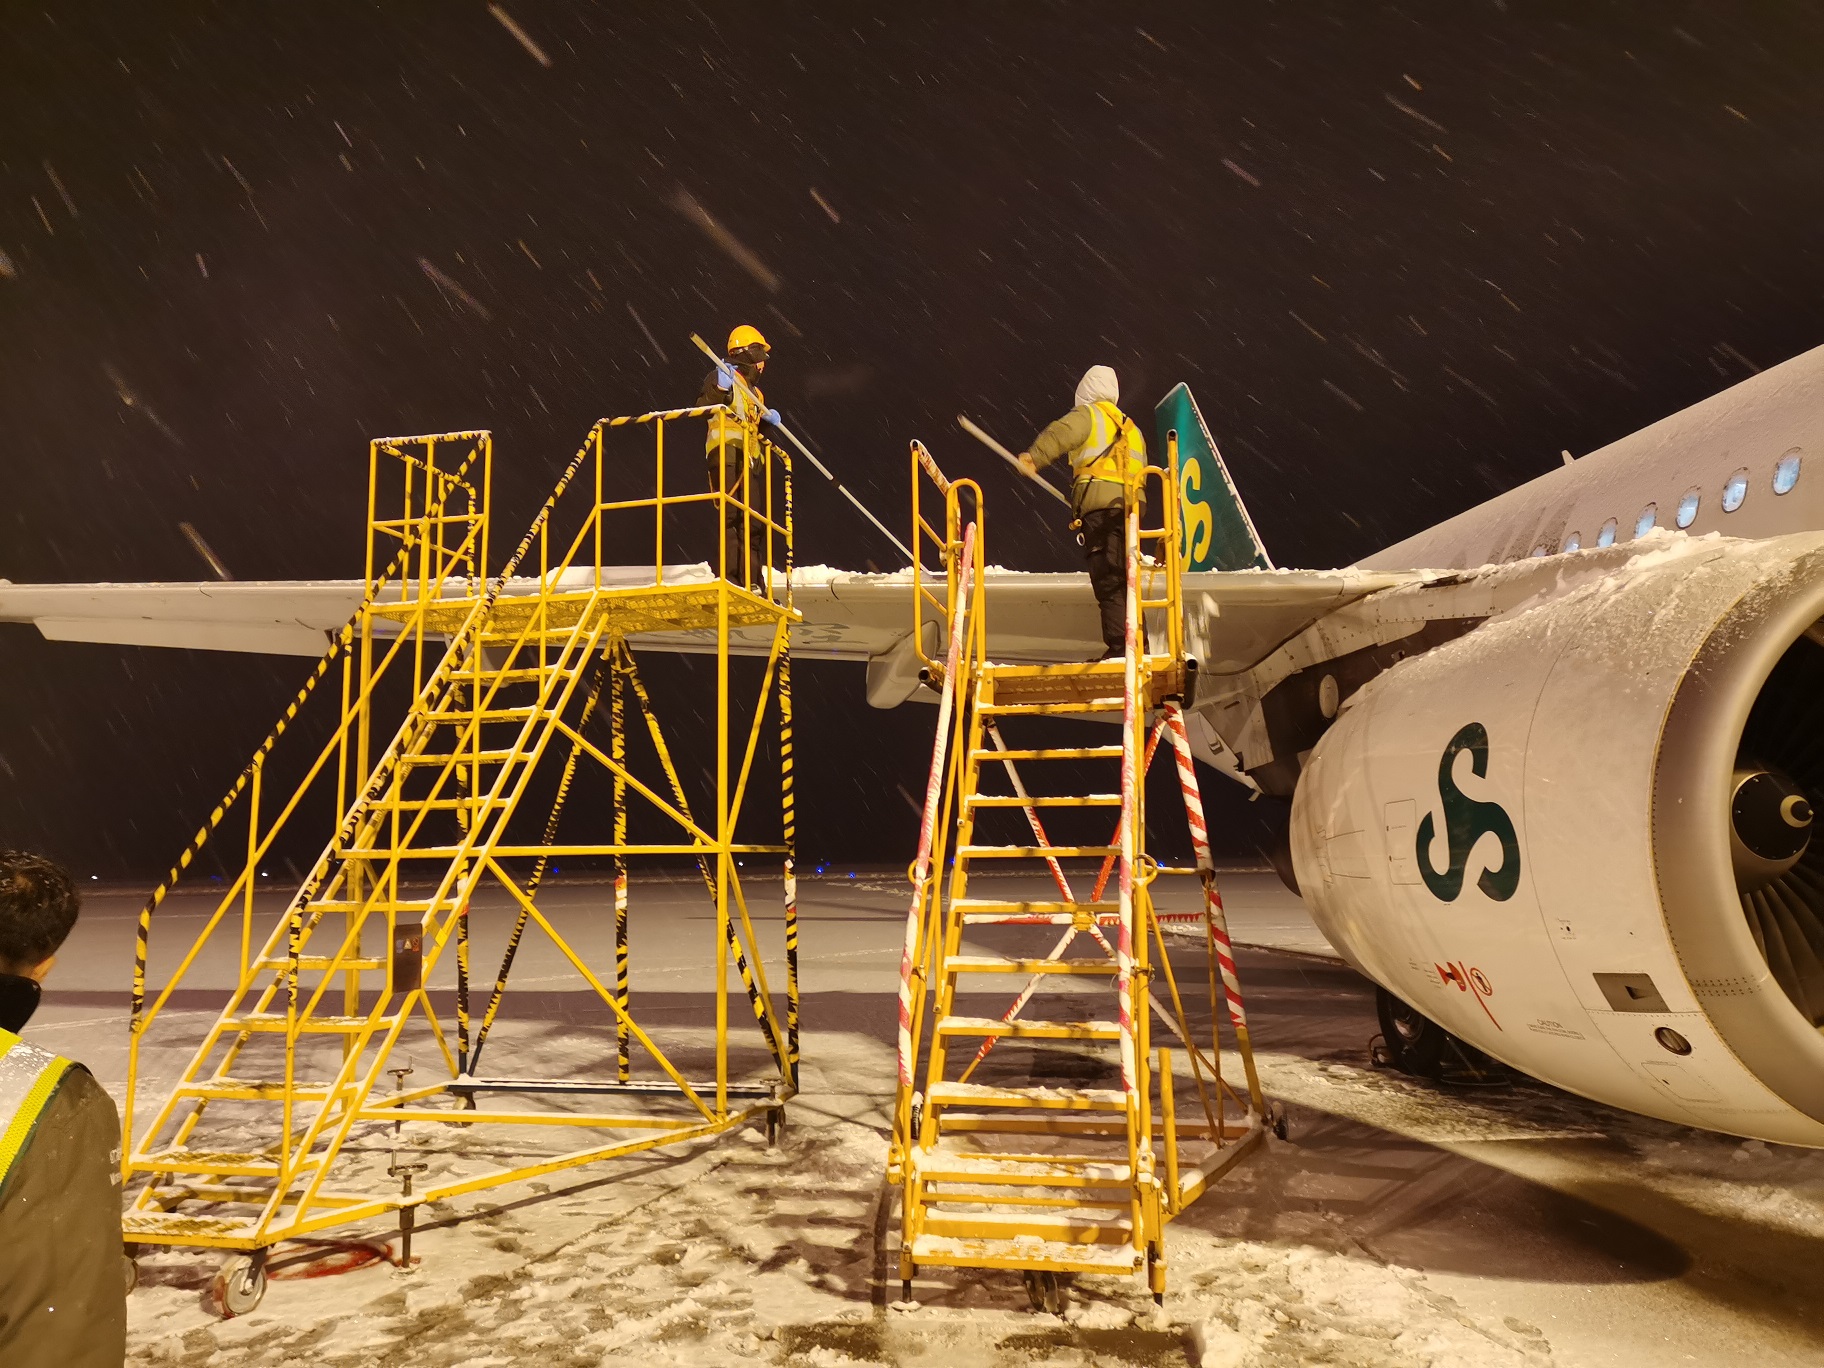 春秋航空河北分公司全力做好降雪天气航班运行保障工作